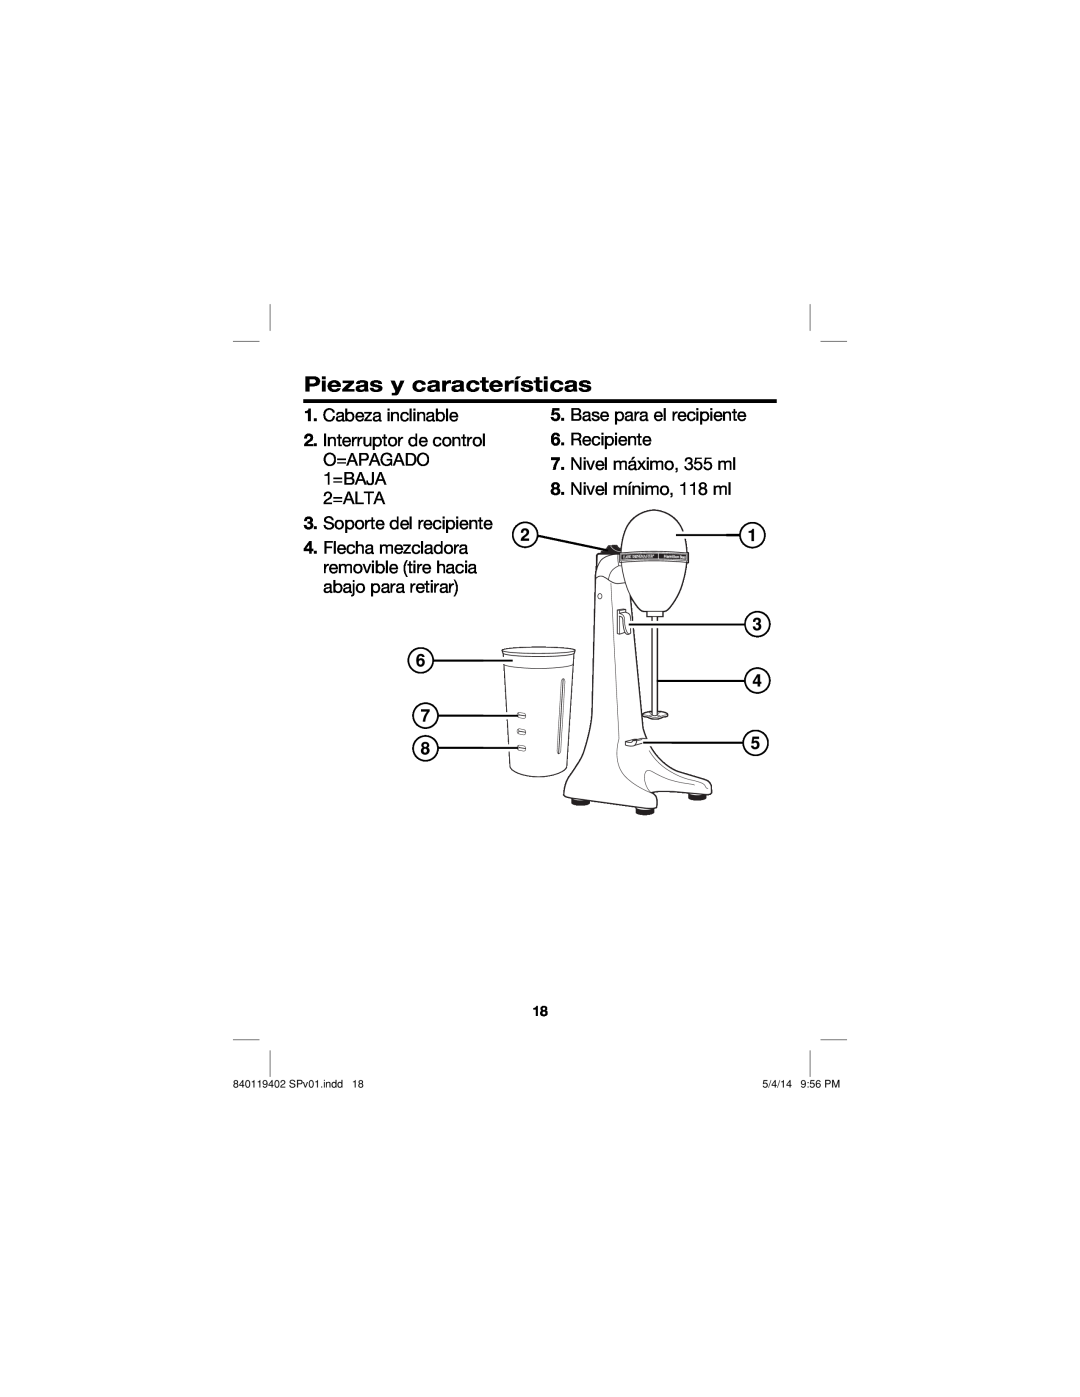 Hamilton Beach manual Piezas y características, Cabeza inclinable 2.Interruptor de control, 840119402 SPv01.indd 